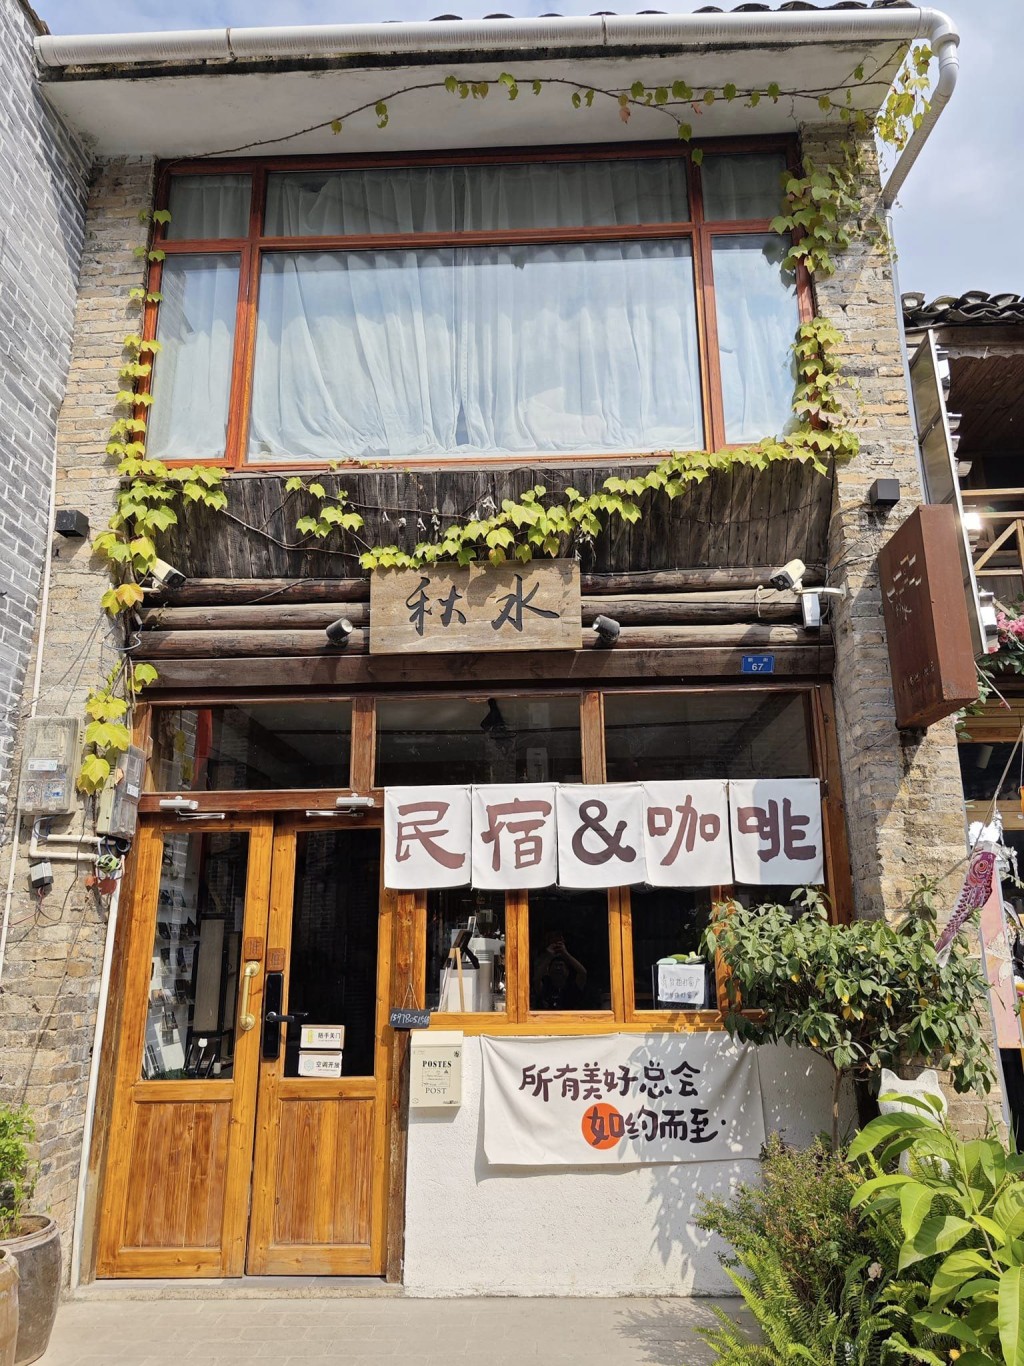 興坪古鎮內的咖啡店。圖片授權Byron Chan